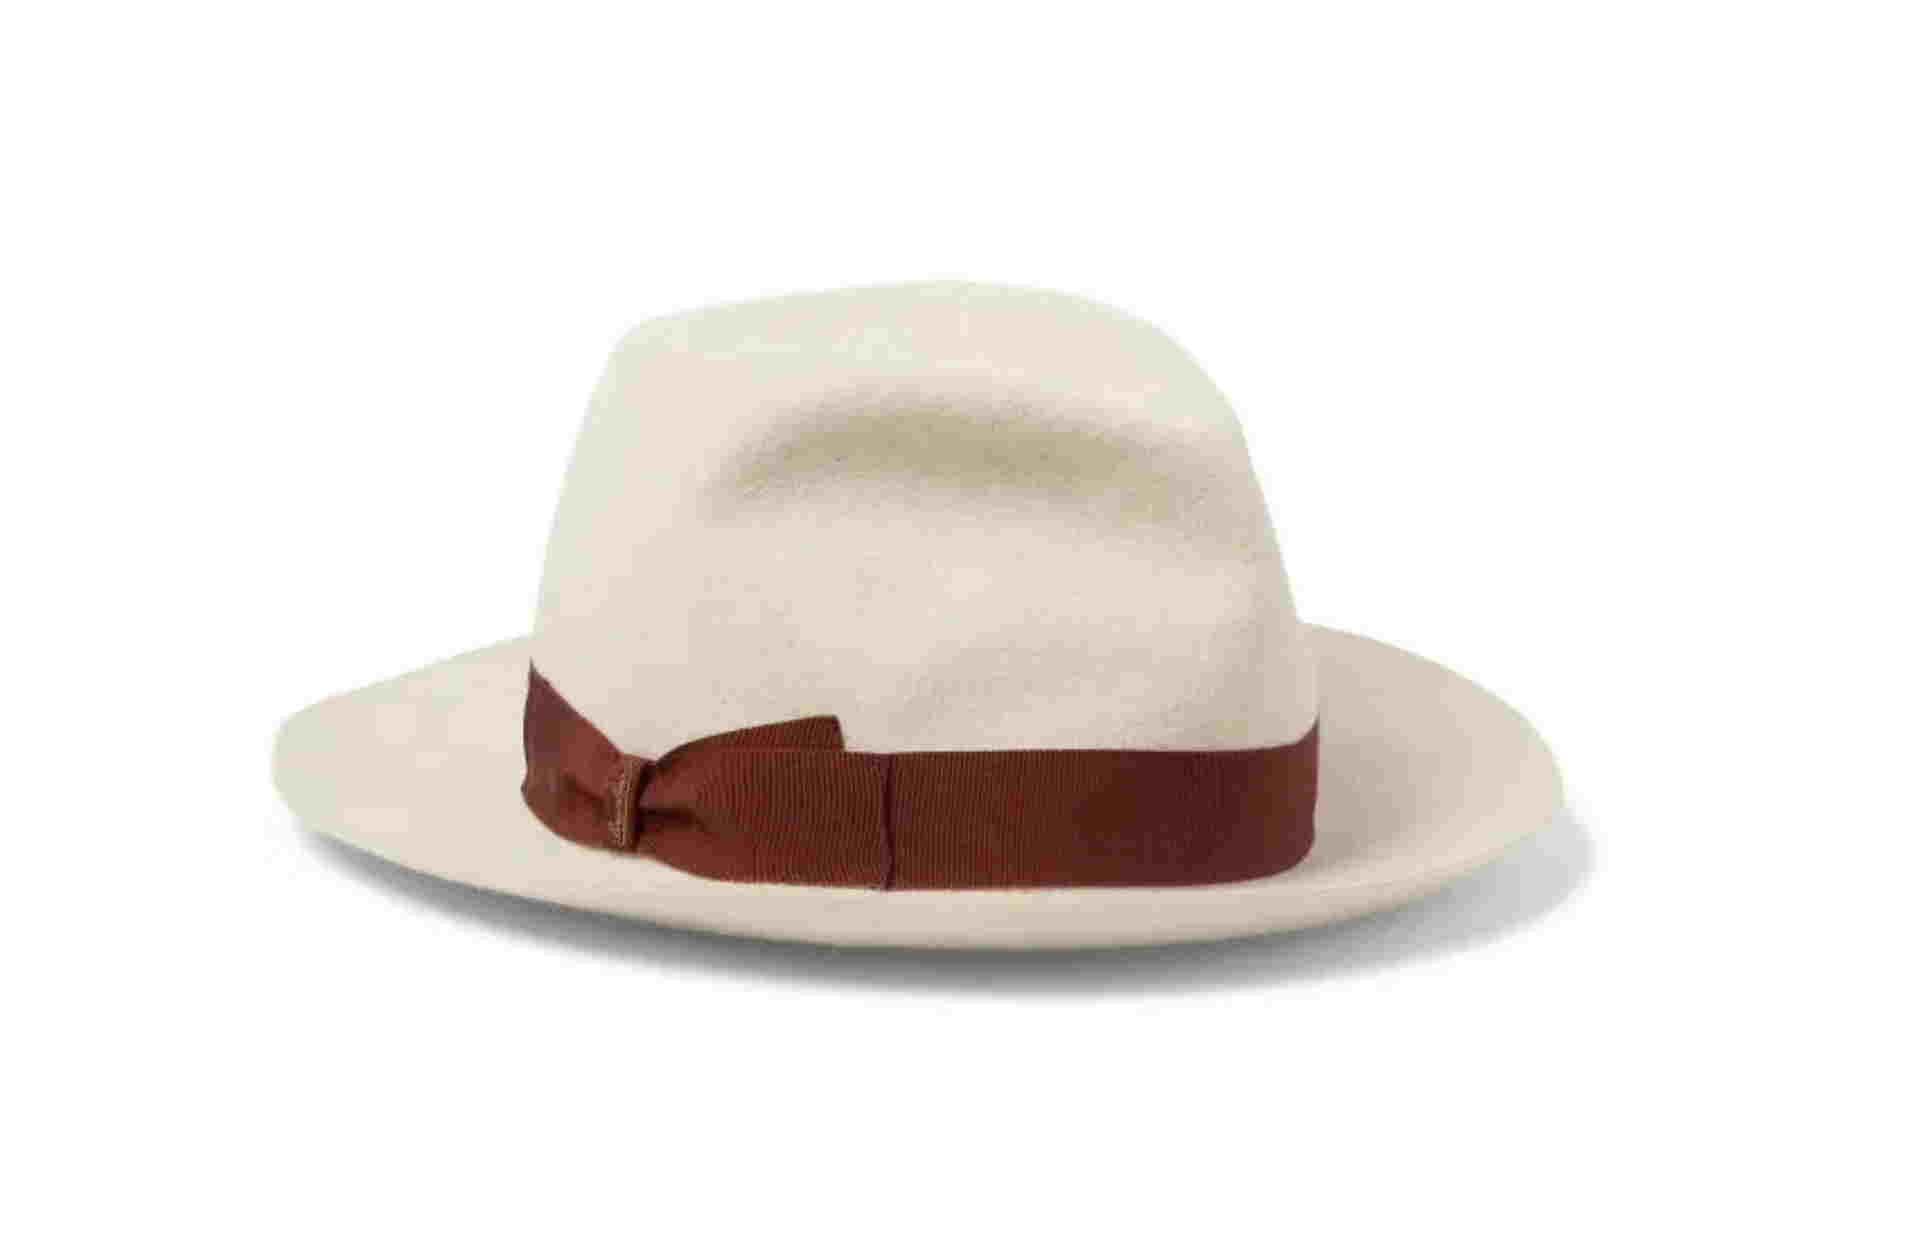 Τα 5 στυλ καπέλων που δεν πρέπει να λείπουν από την ντουλάπα σου